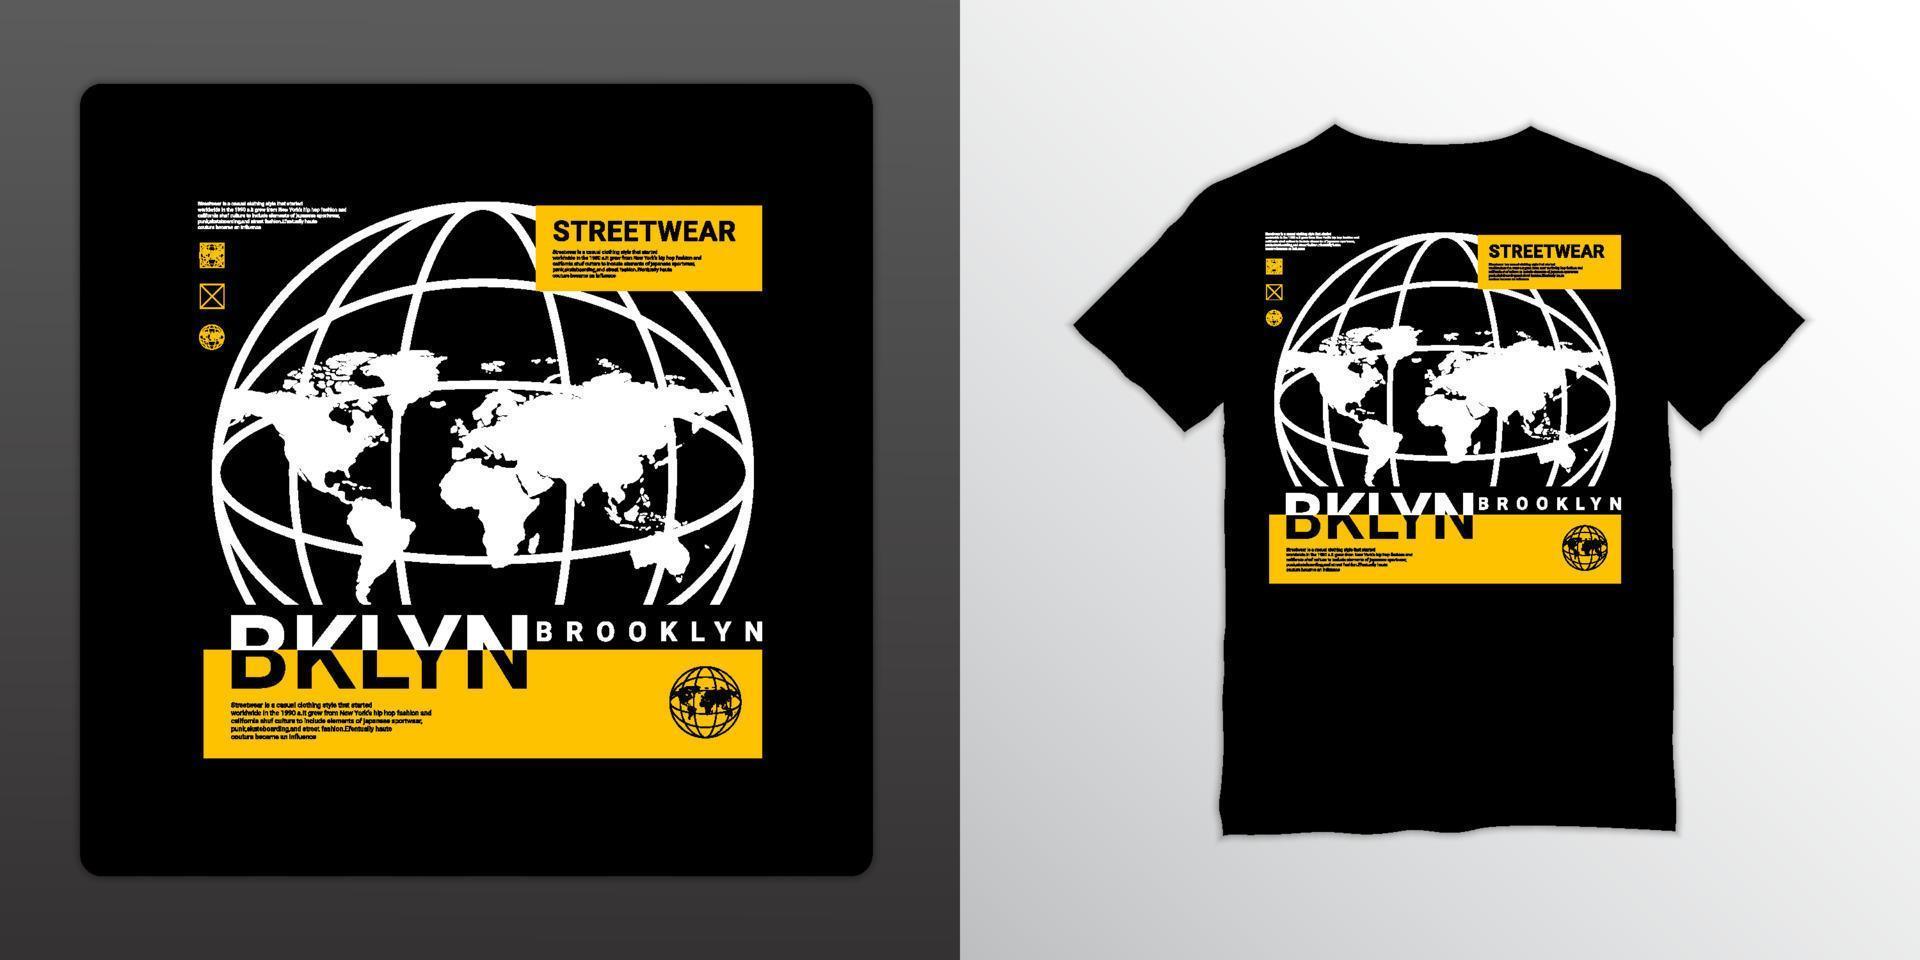 diseño de camisetas en todo el mundo, adecuado para serigrafía, chaquetas y otros vector